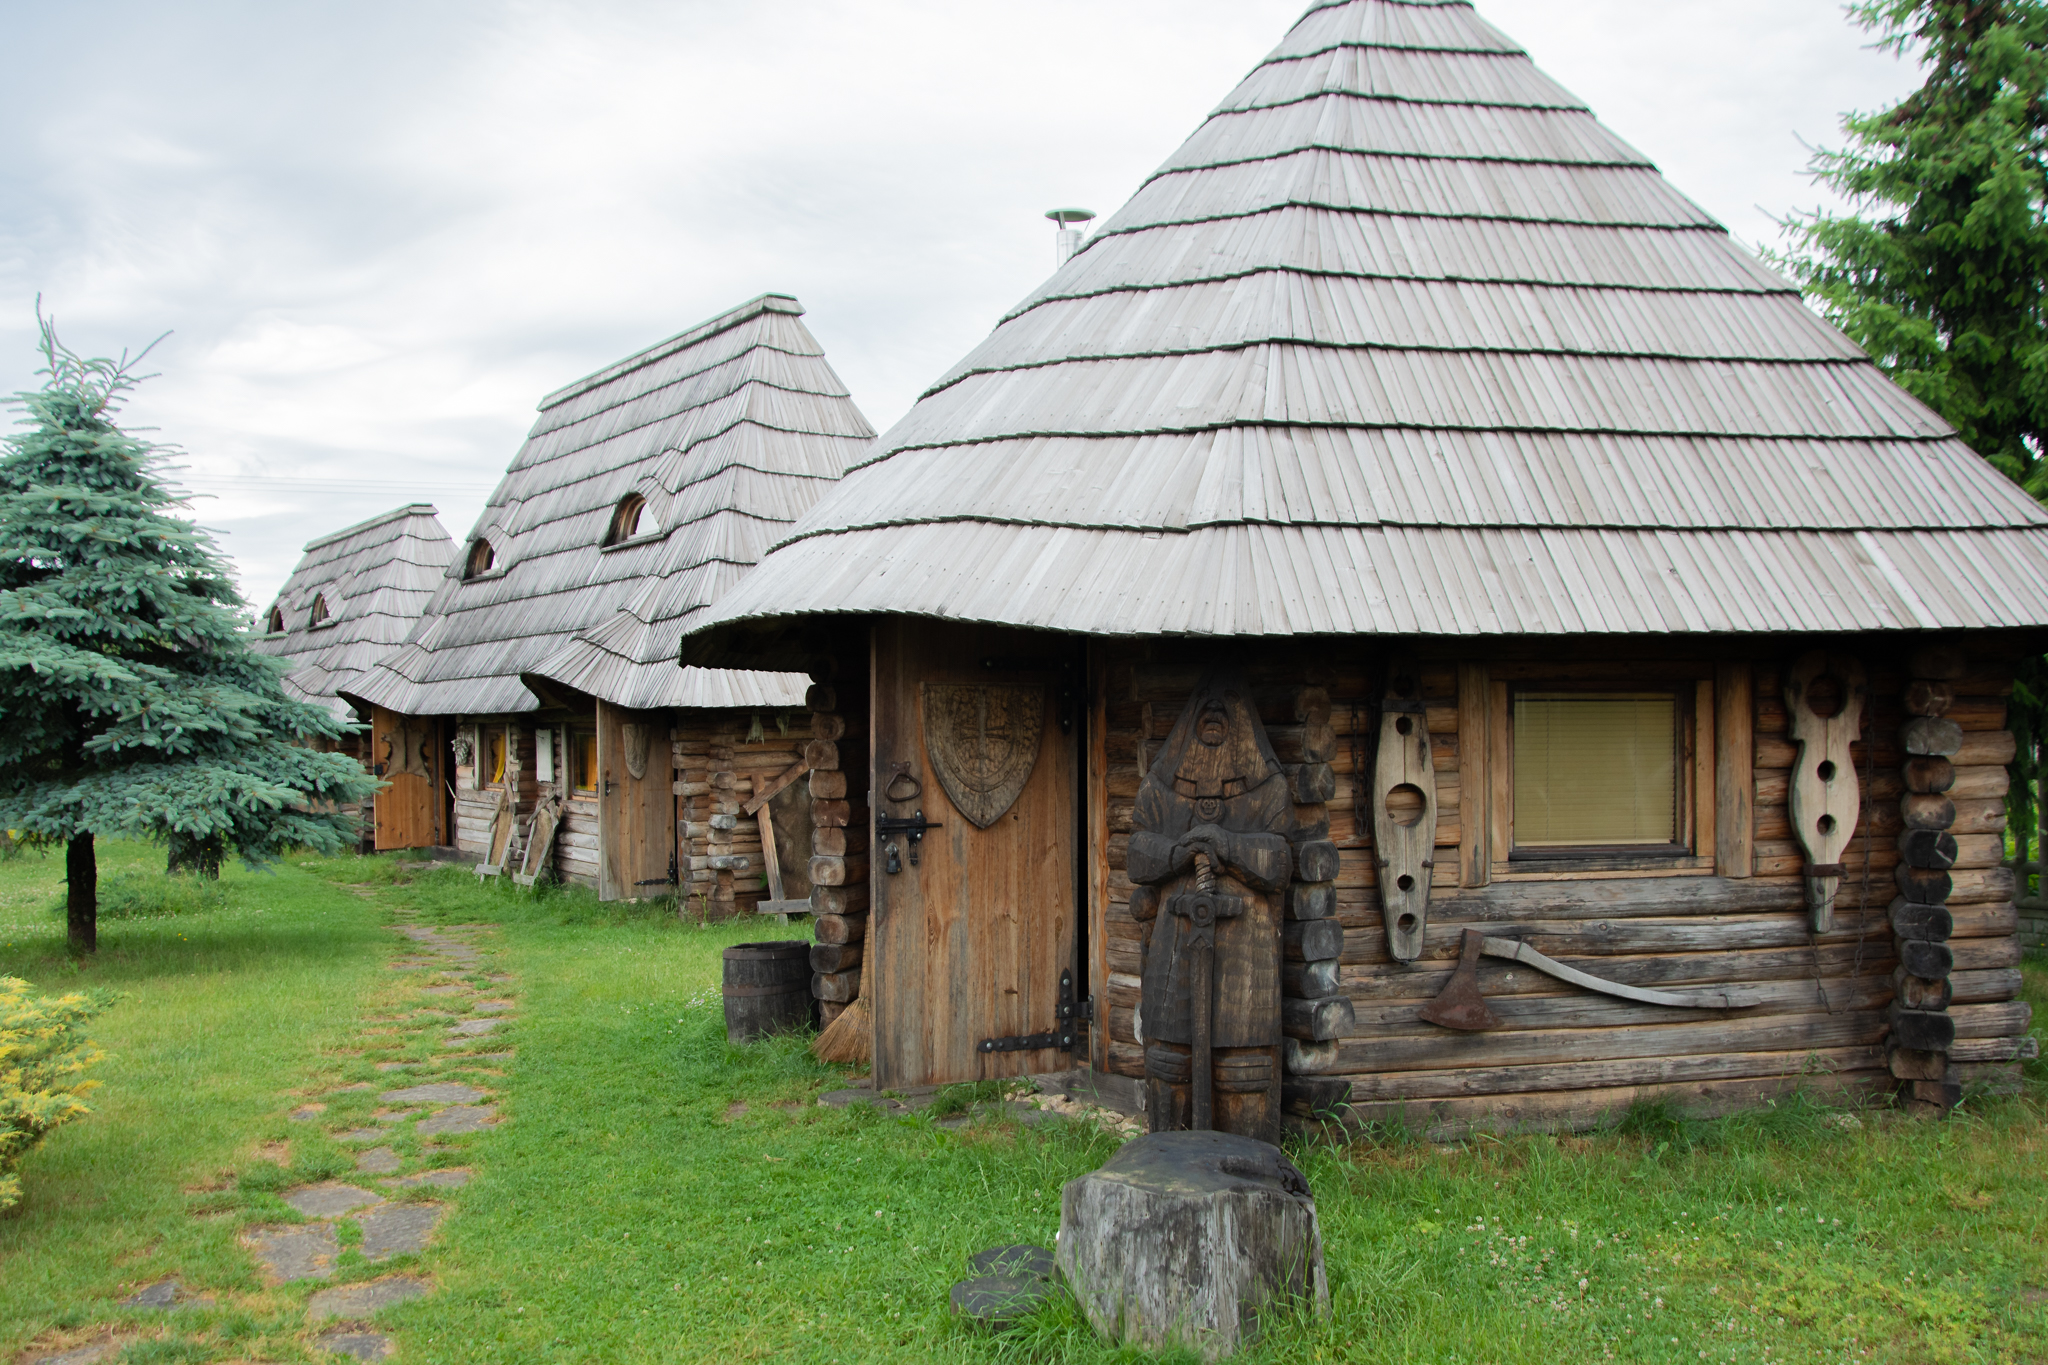 Atrakcja niedaleko Kielc - Gród Pędzików, domki stylizowane na dawny gród.